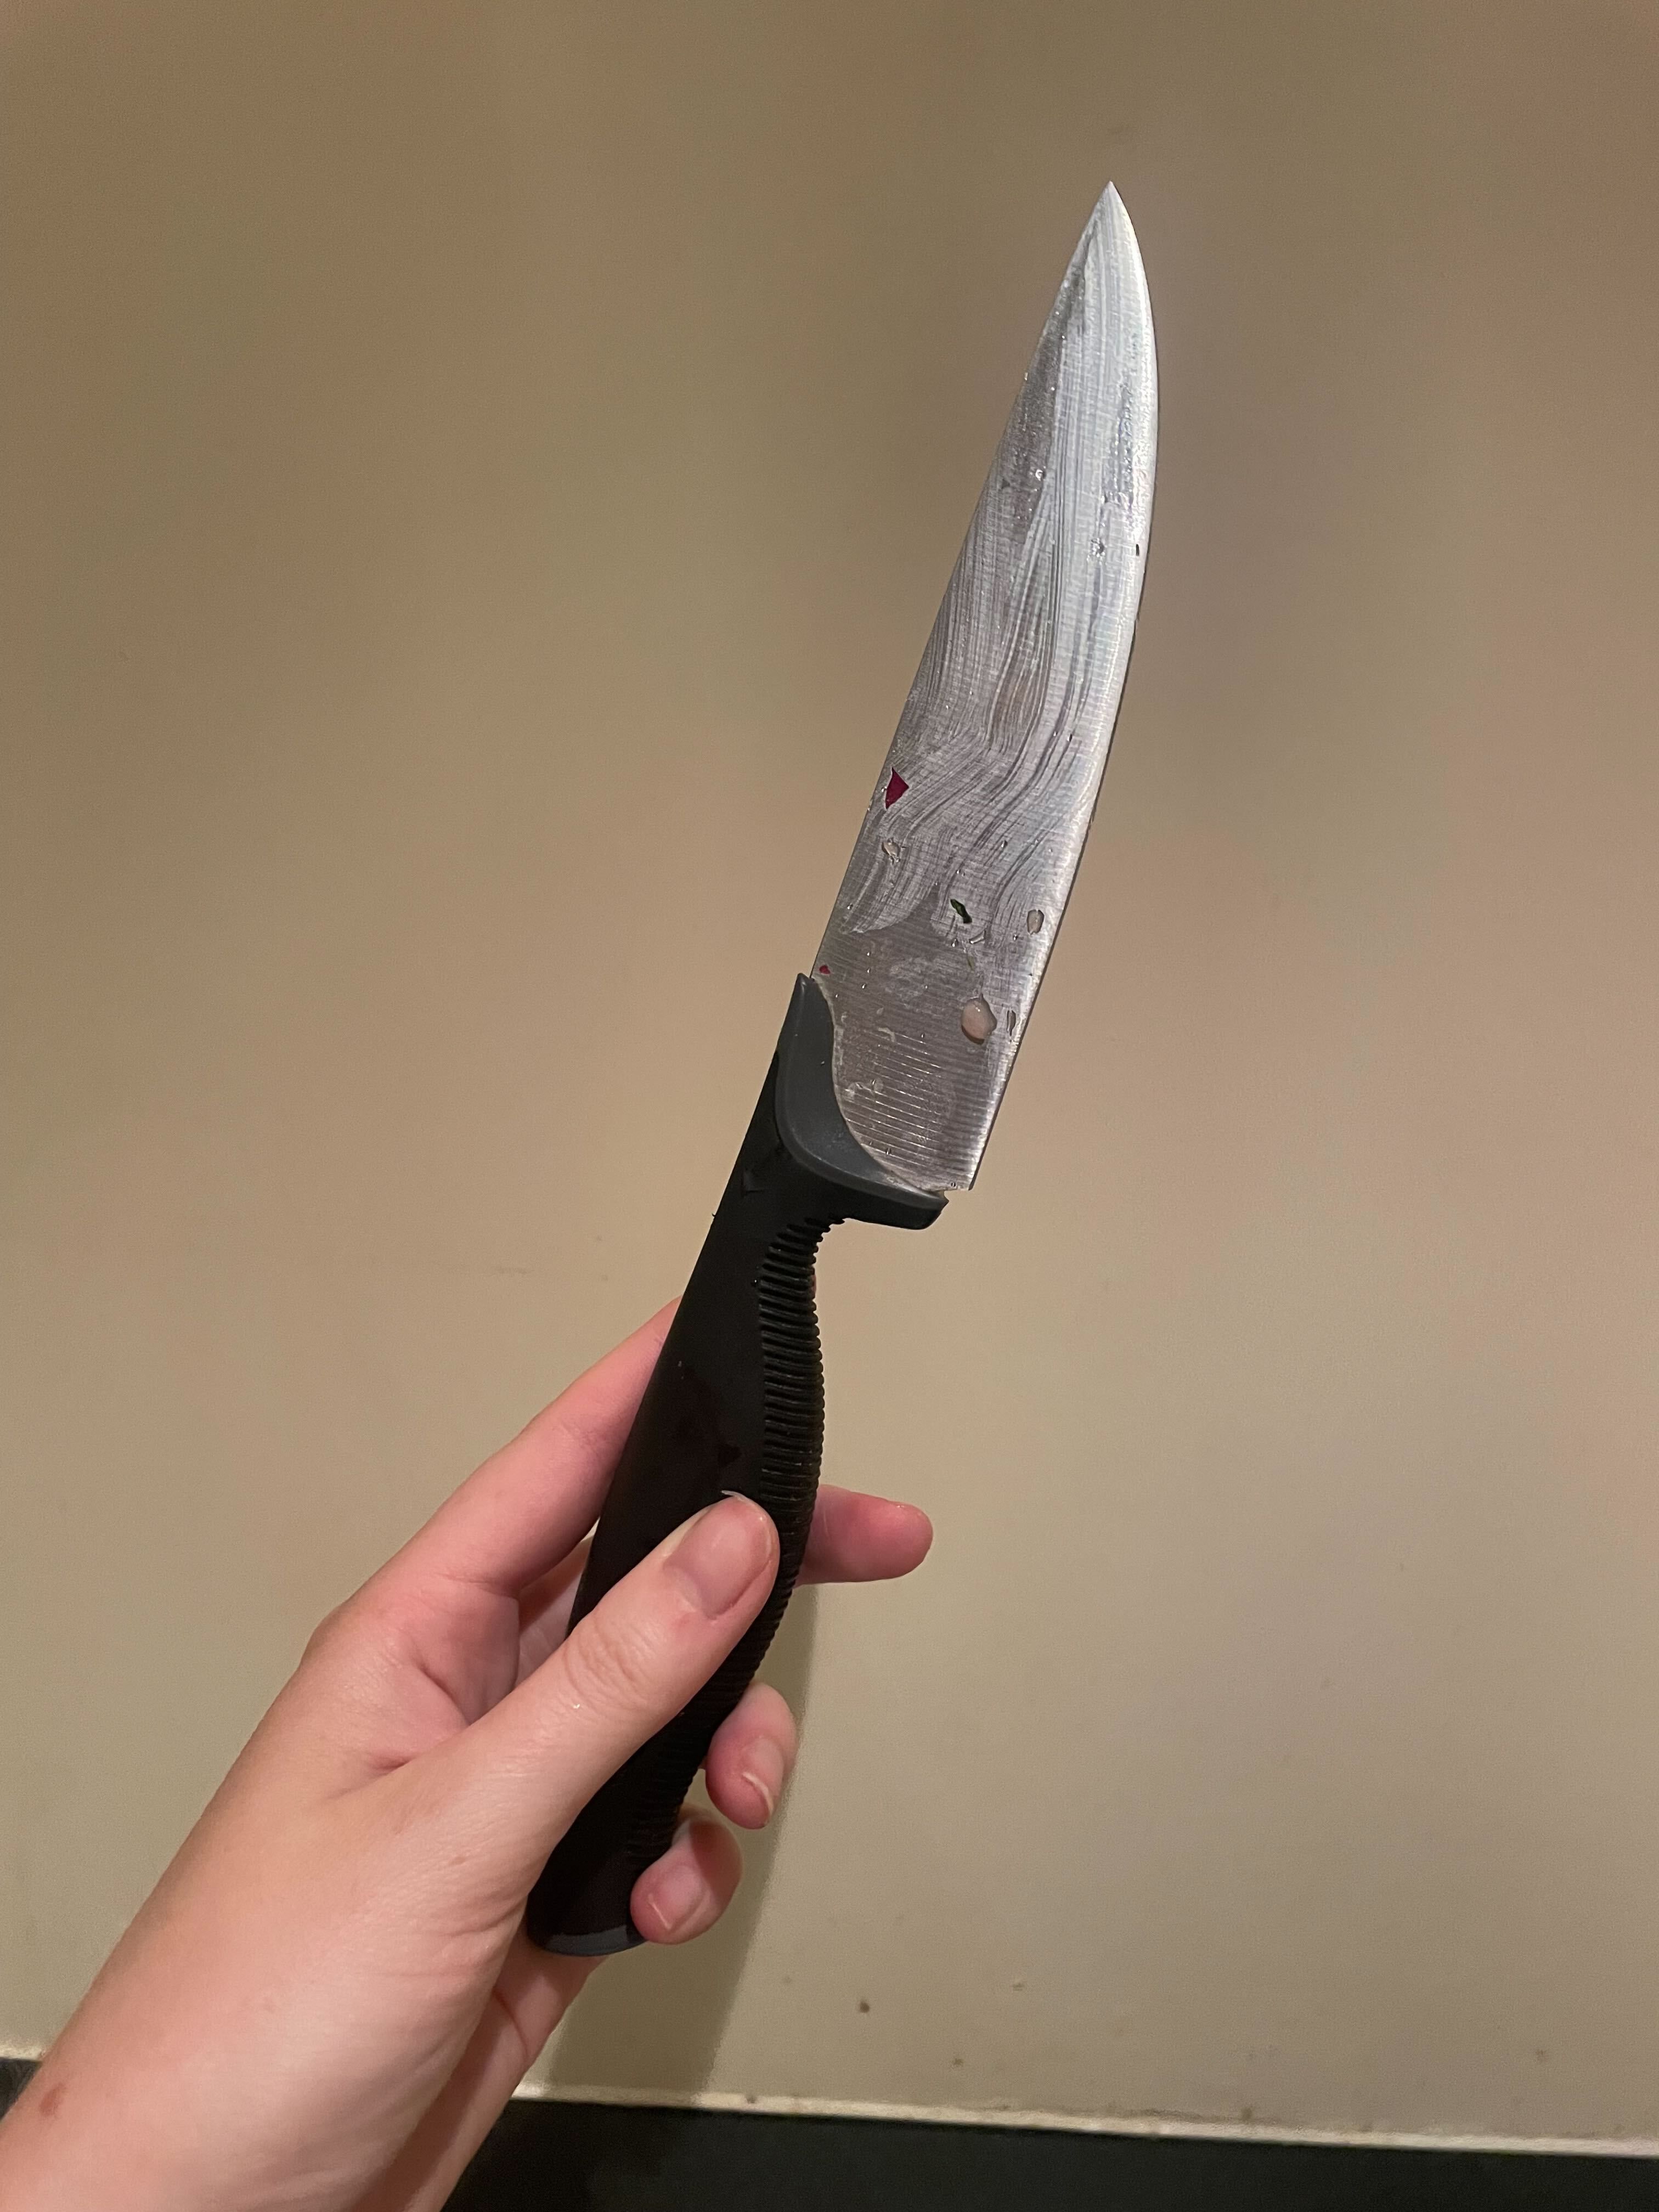 Knife Cleaner - BladeBrush Review